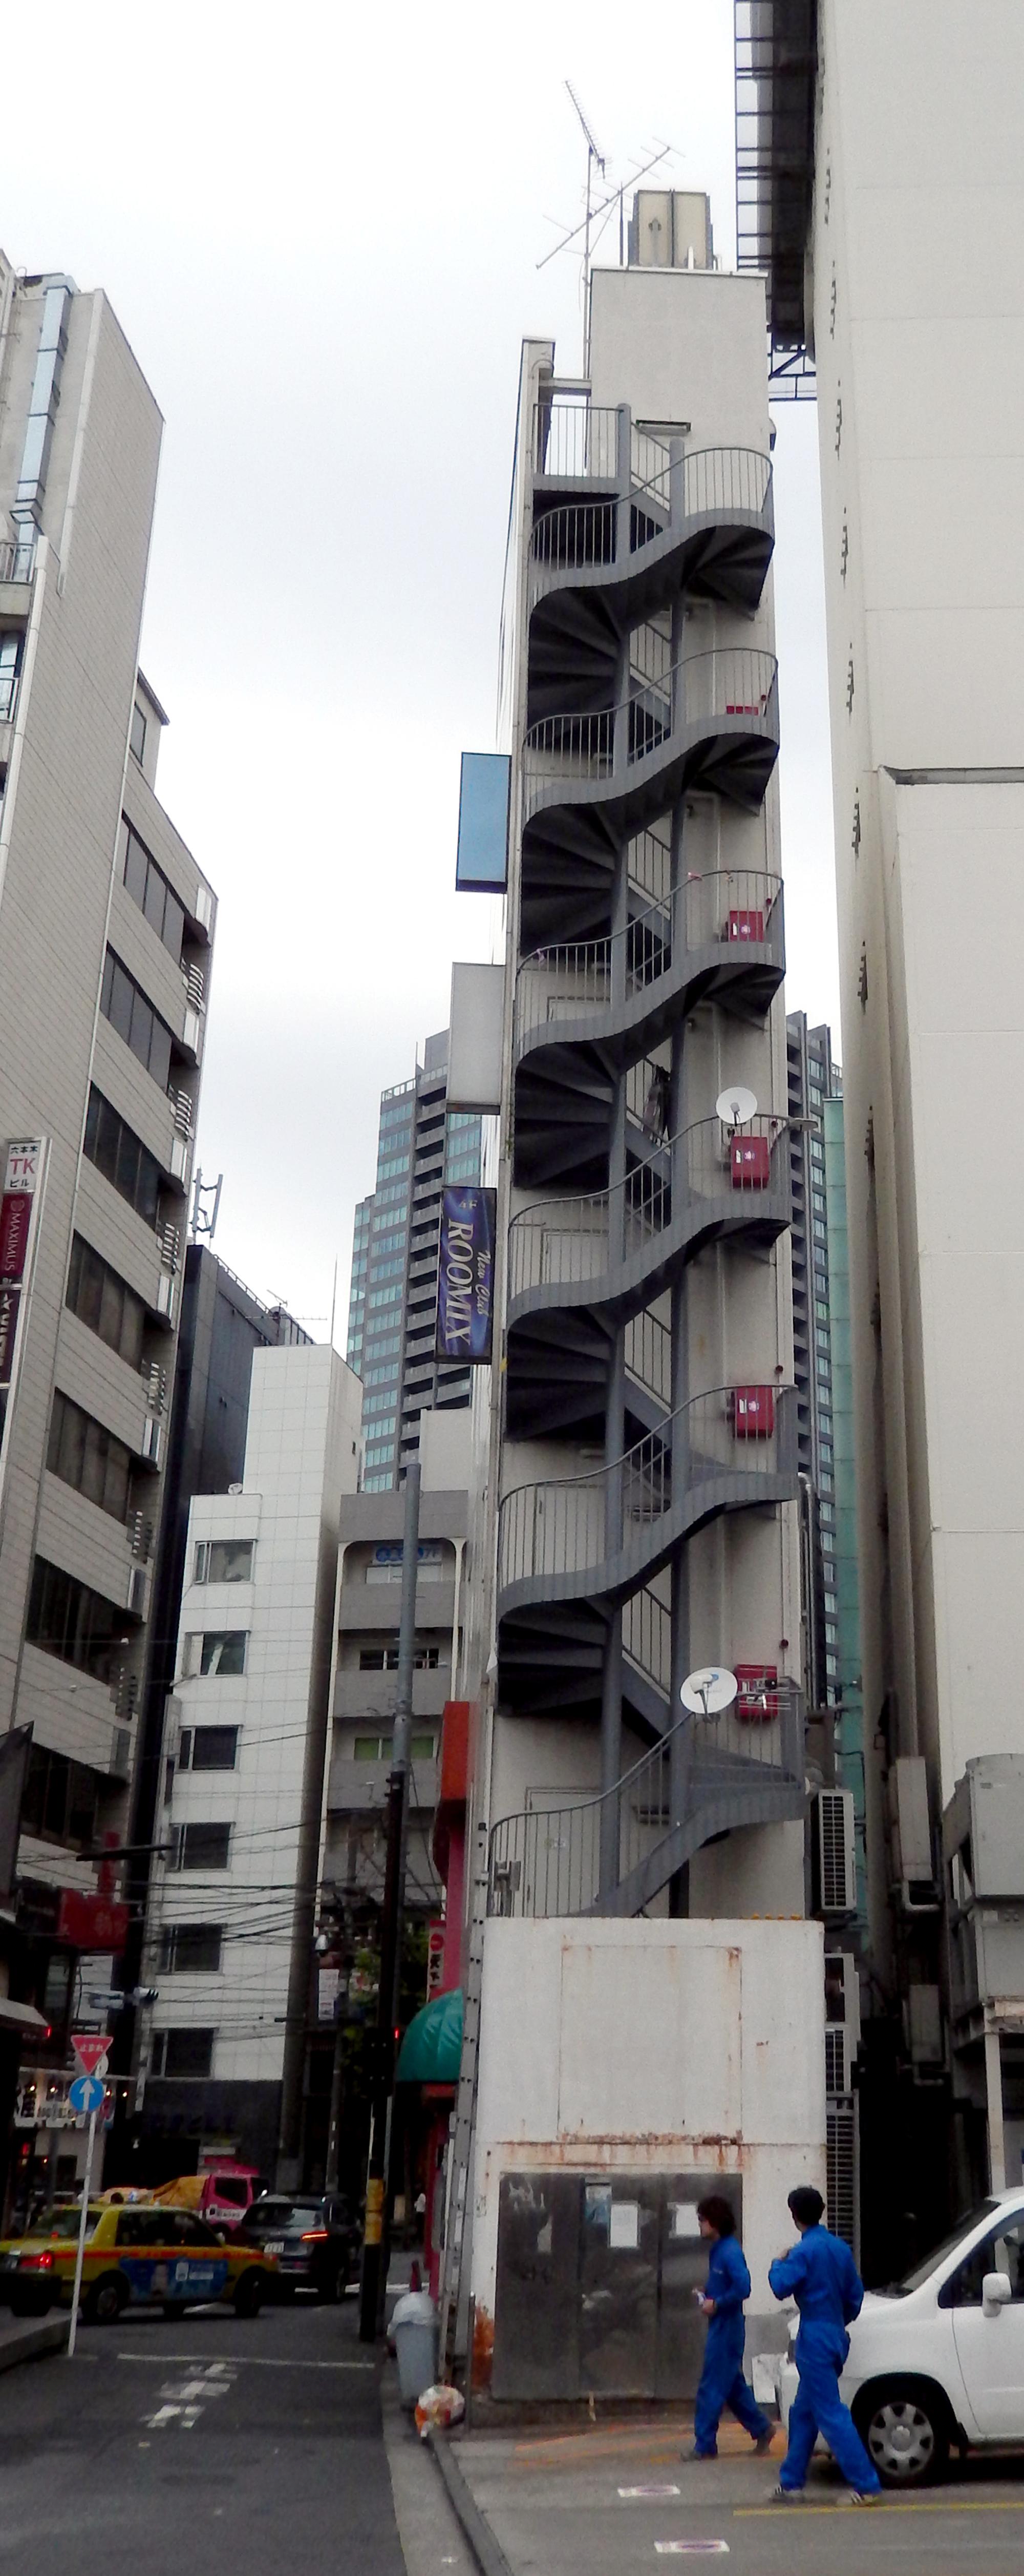 Tokyo (2016) - Narrow Building